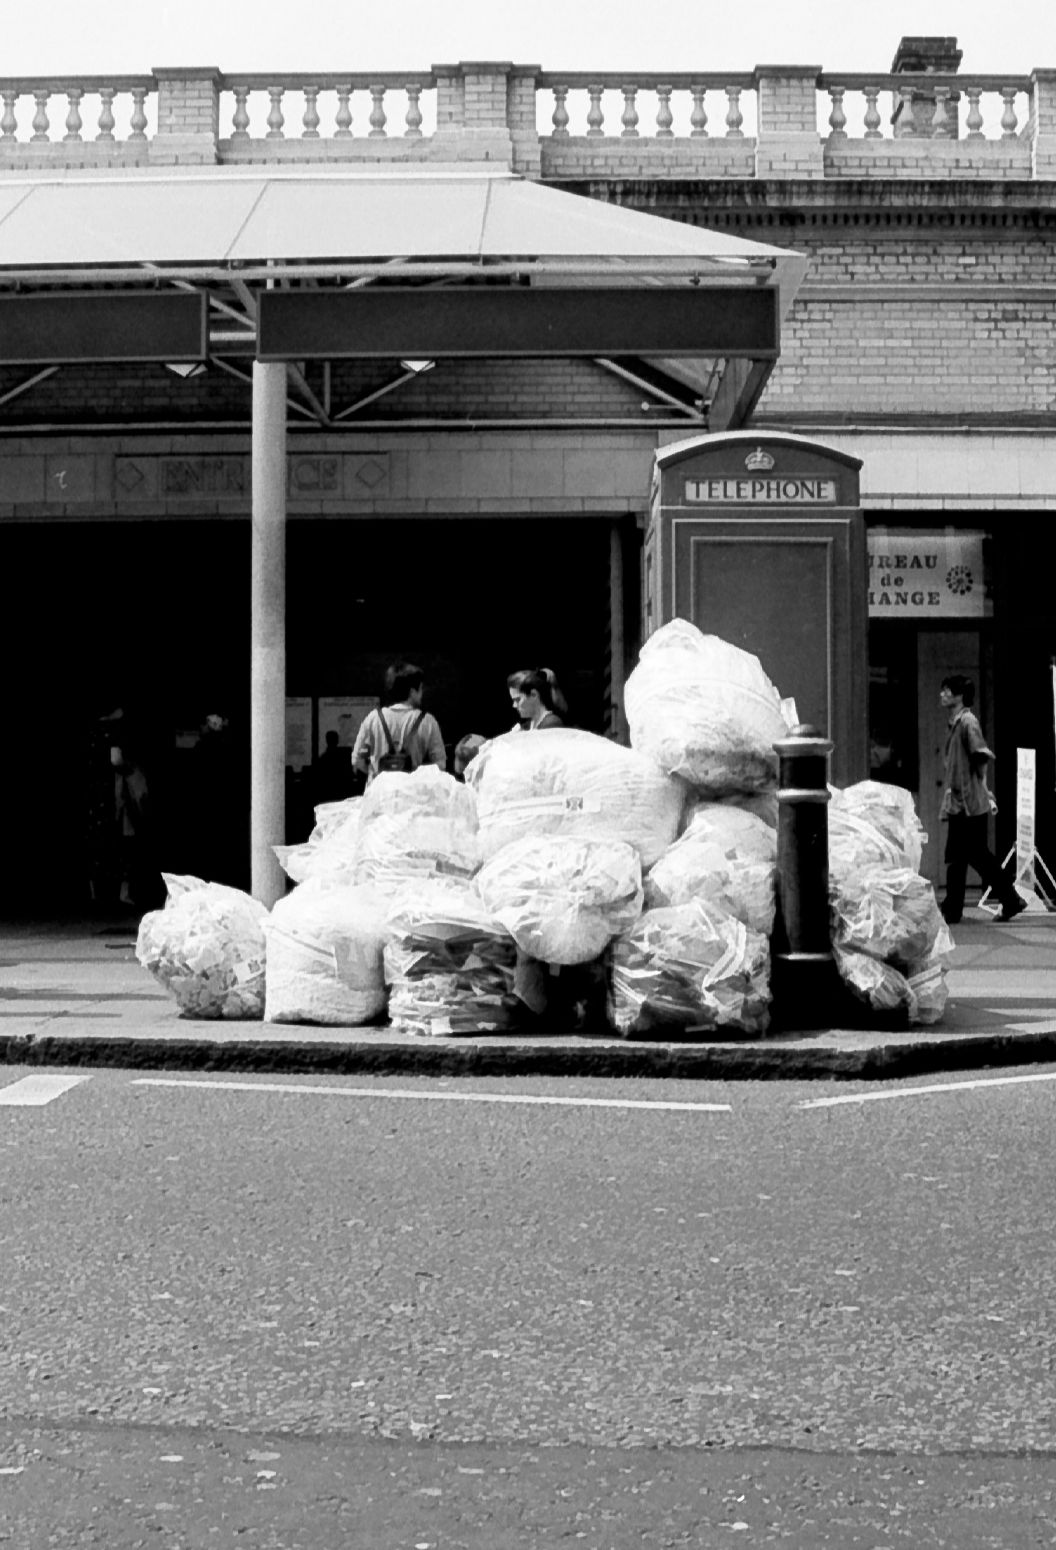 Trash. Kensington, London, England. April 2000